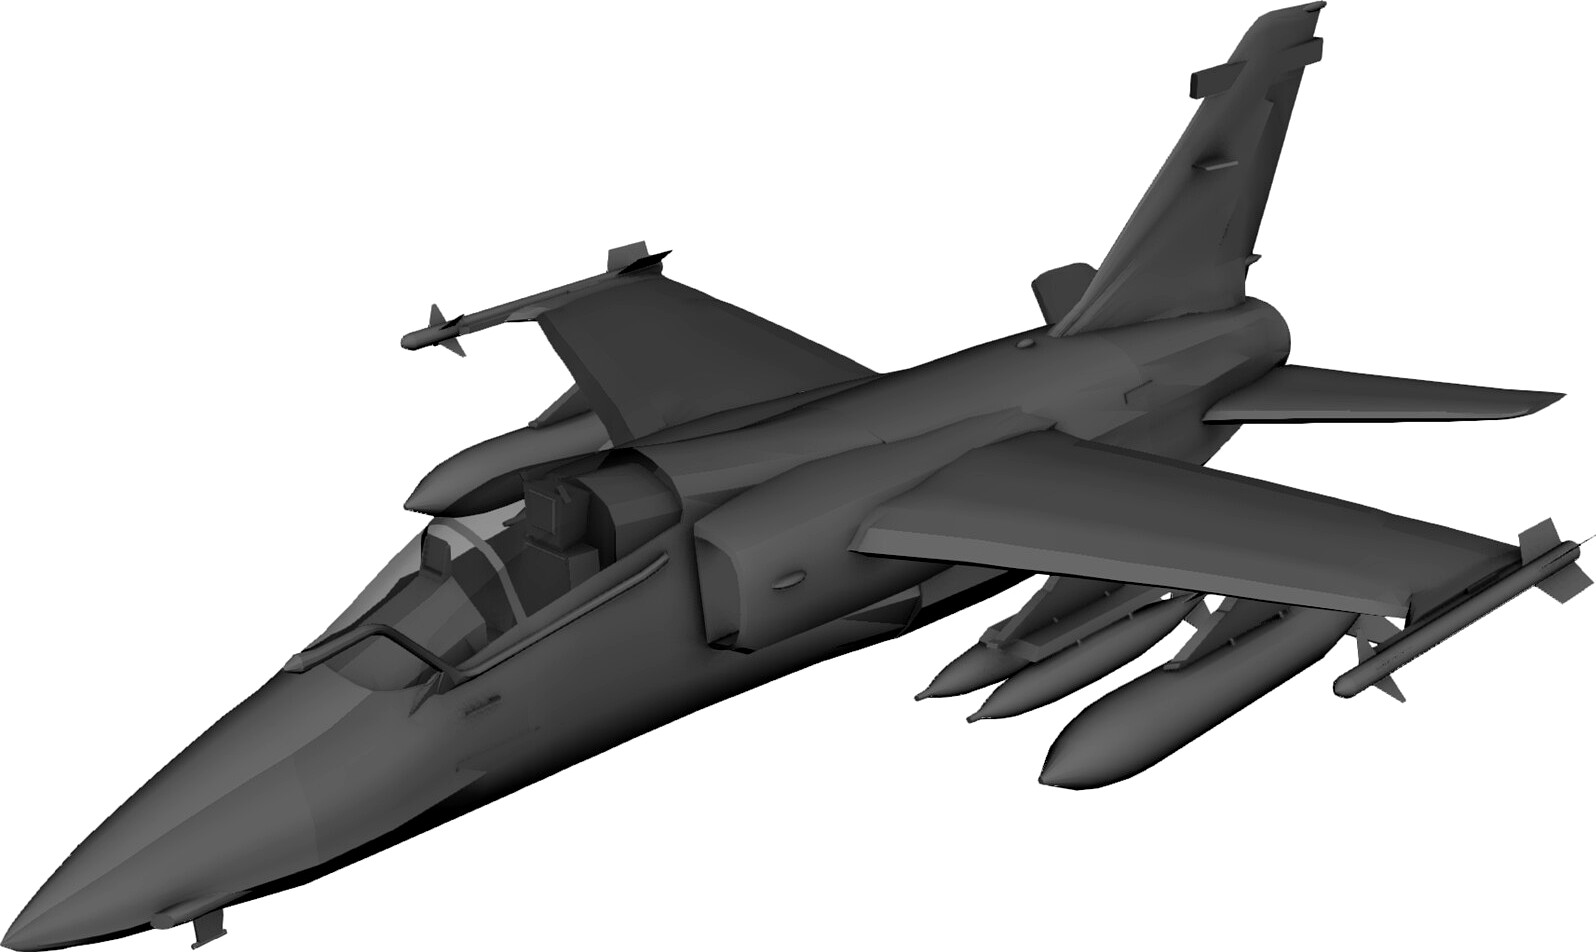 Embraer AMX A1